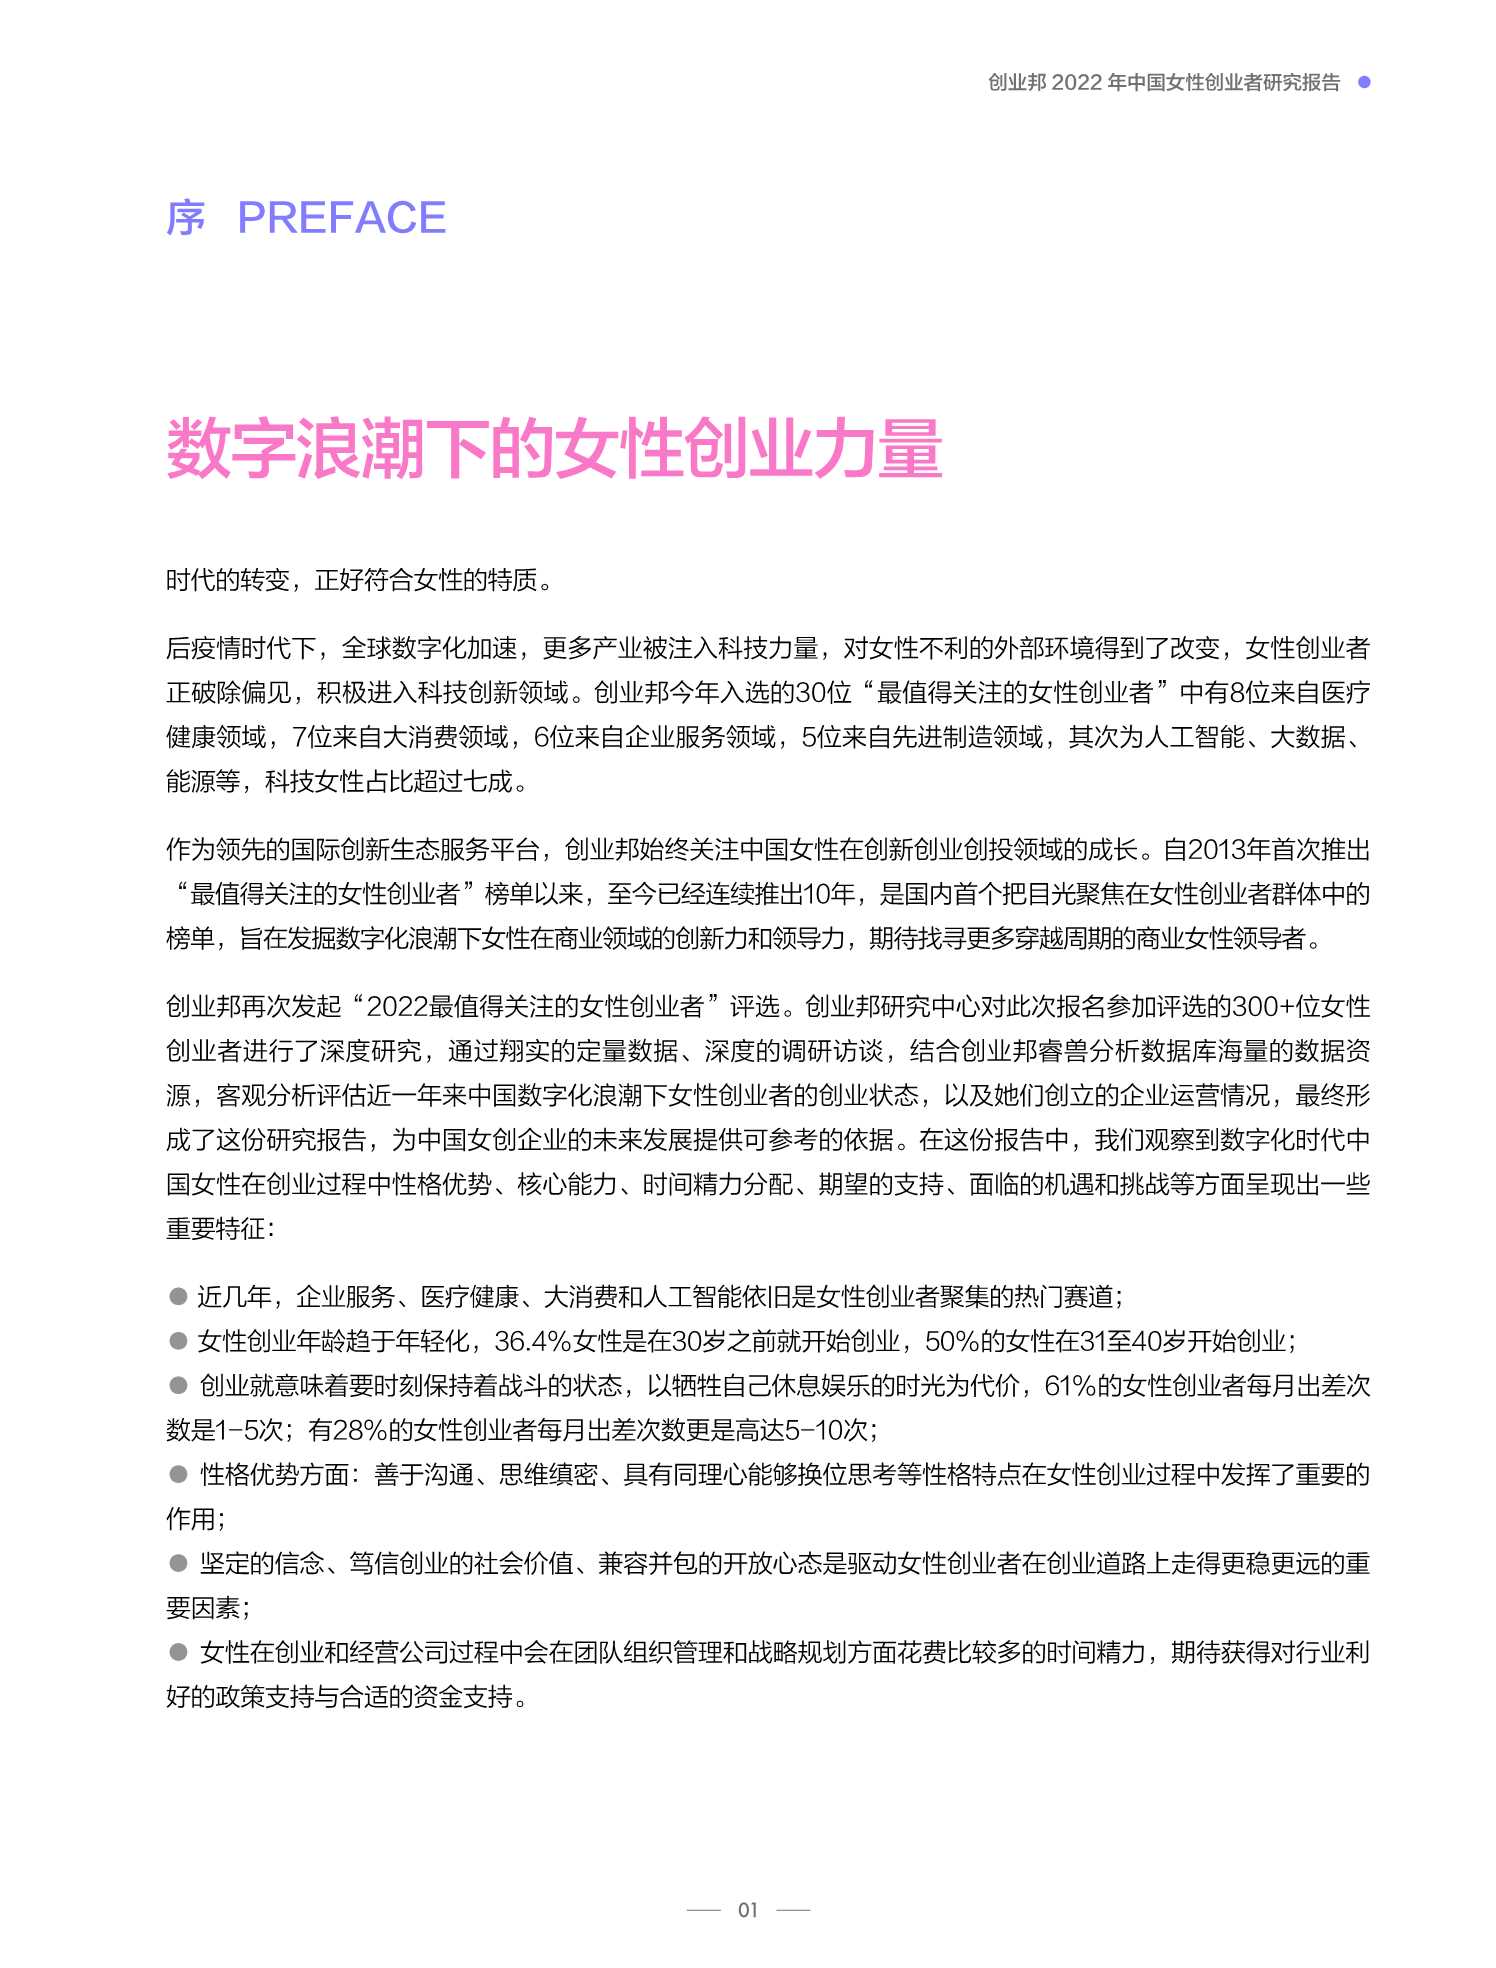 创业邦-2022中国女性创业者研究报告-2022.04-37页